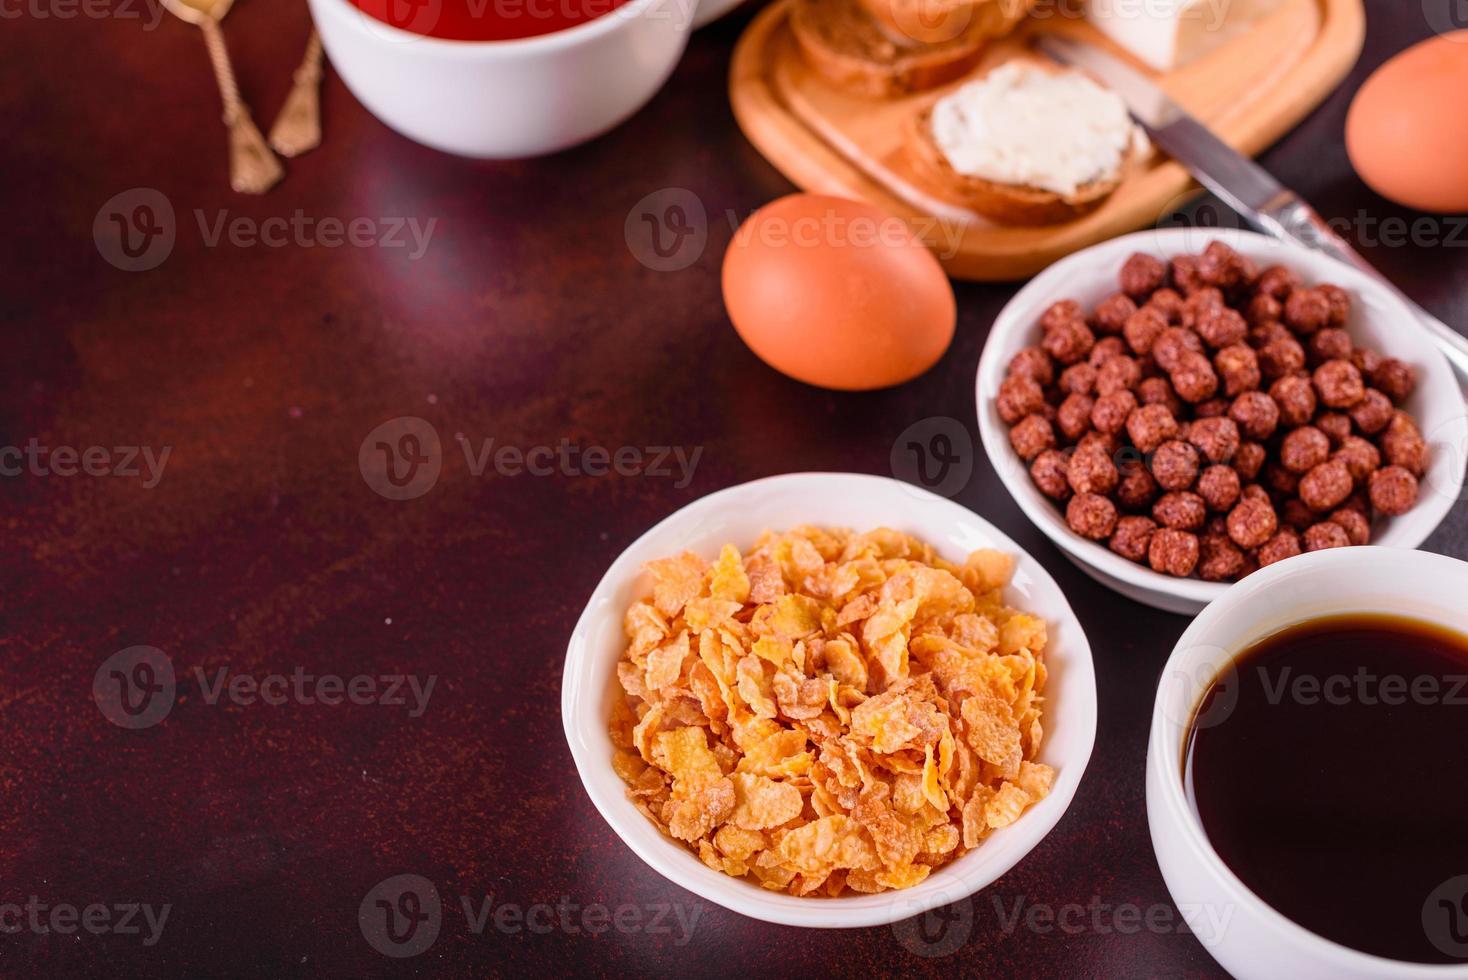 smakrik och näringsrik frukost med granola, flingor och nötter. hälsosam mat foto